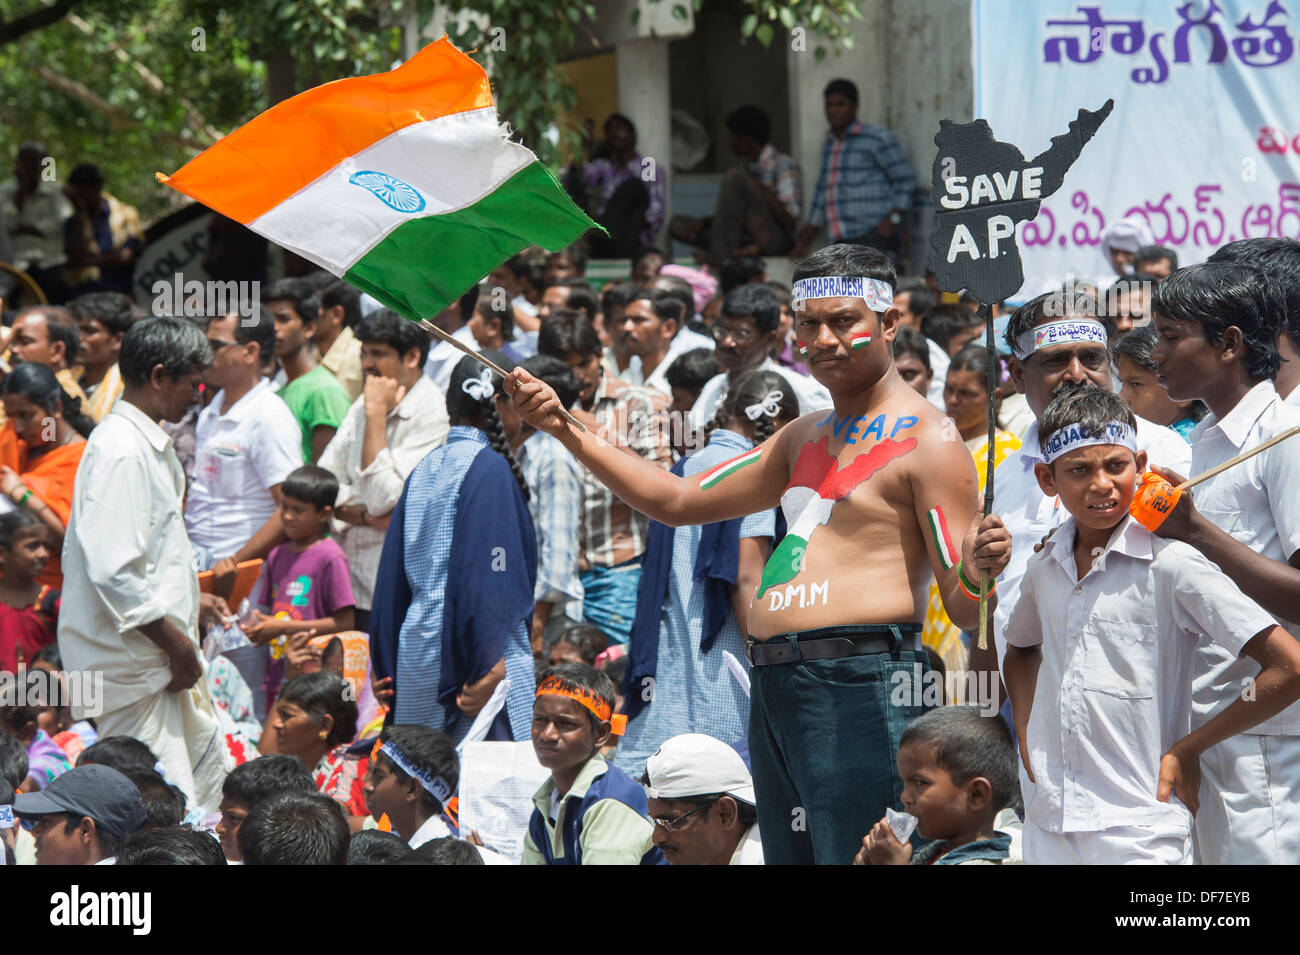 L'homme indien qui agitait un drapeau à un meeting de protestation contre la création de Telangana. Puttaparthi, Andhra Pradesh, Inde Banque D'Images